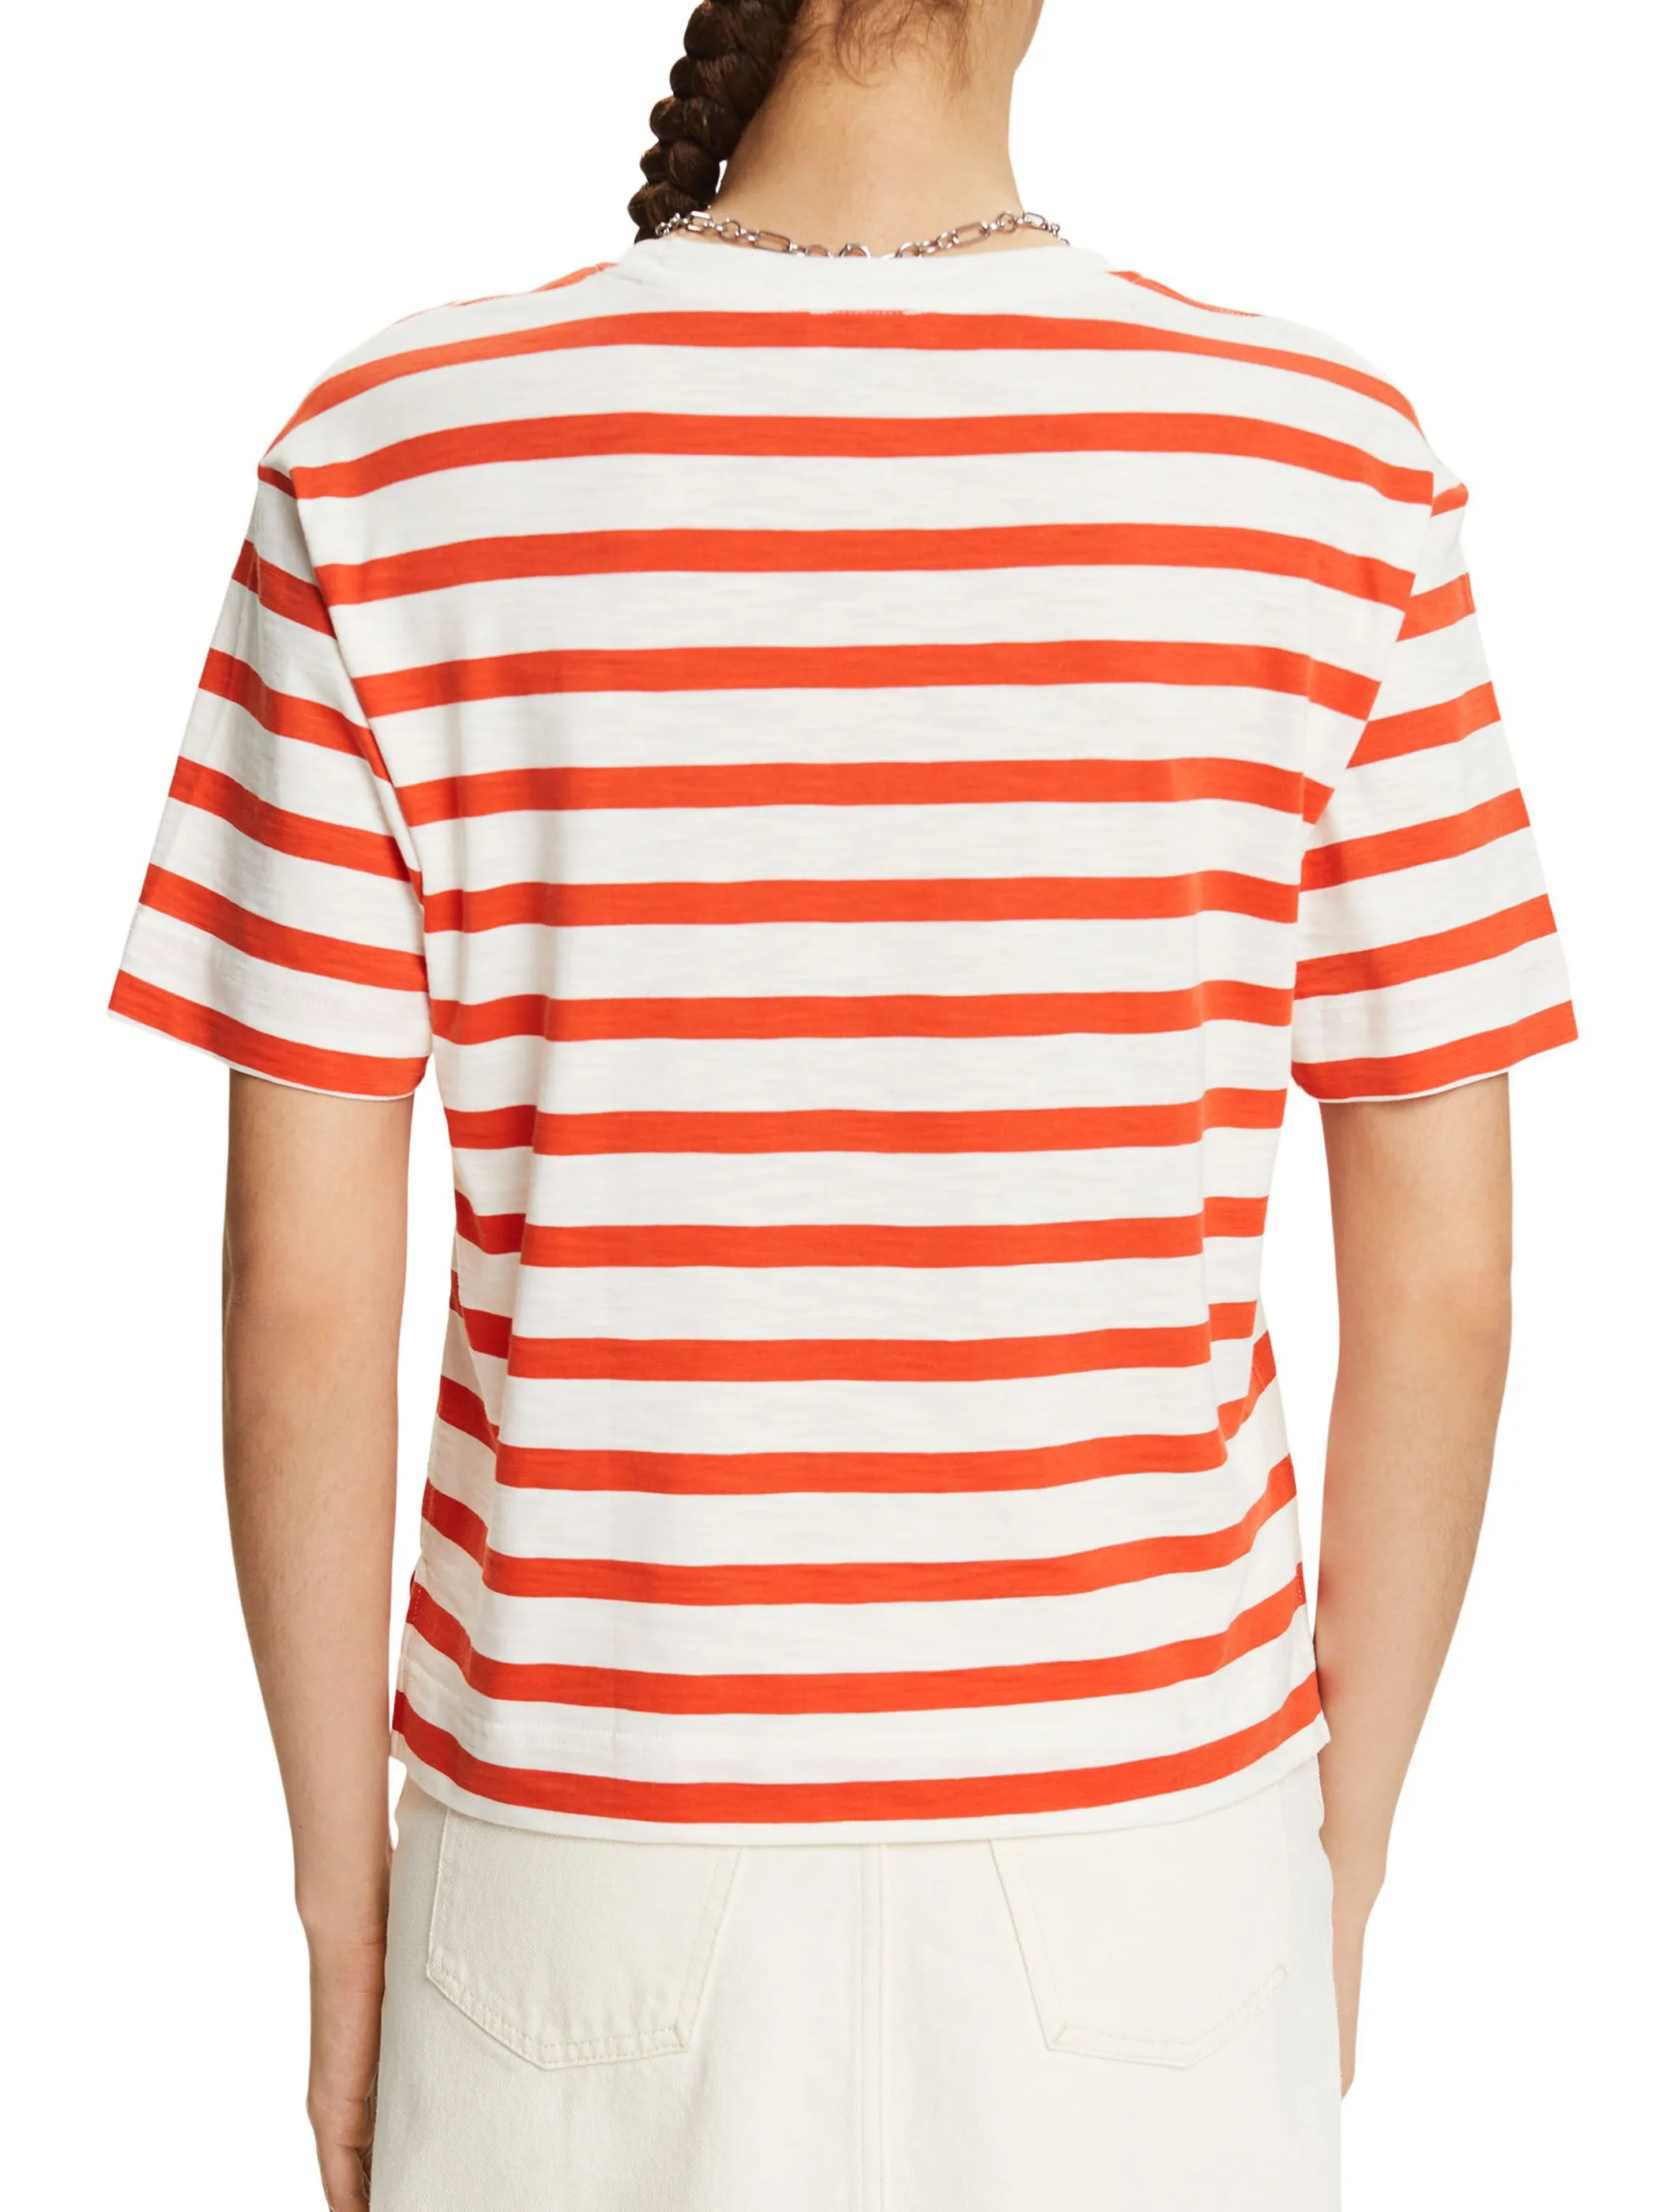 Esprit 034EE1K328 SG-034EE1K327  tshirt stripes Orange 893041 E882 2